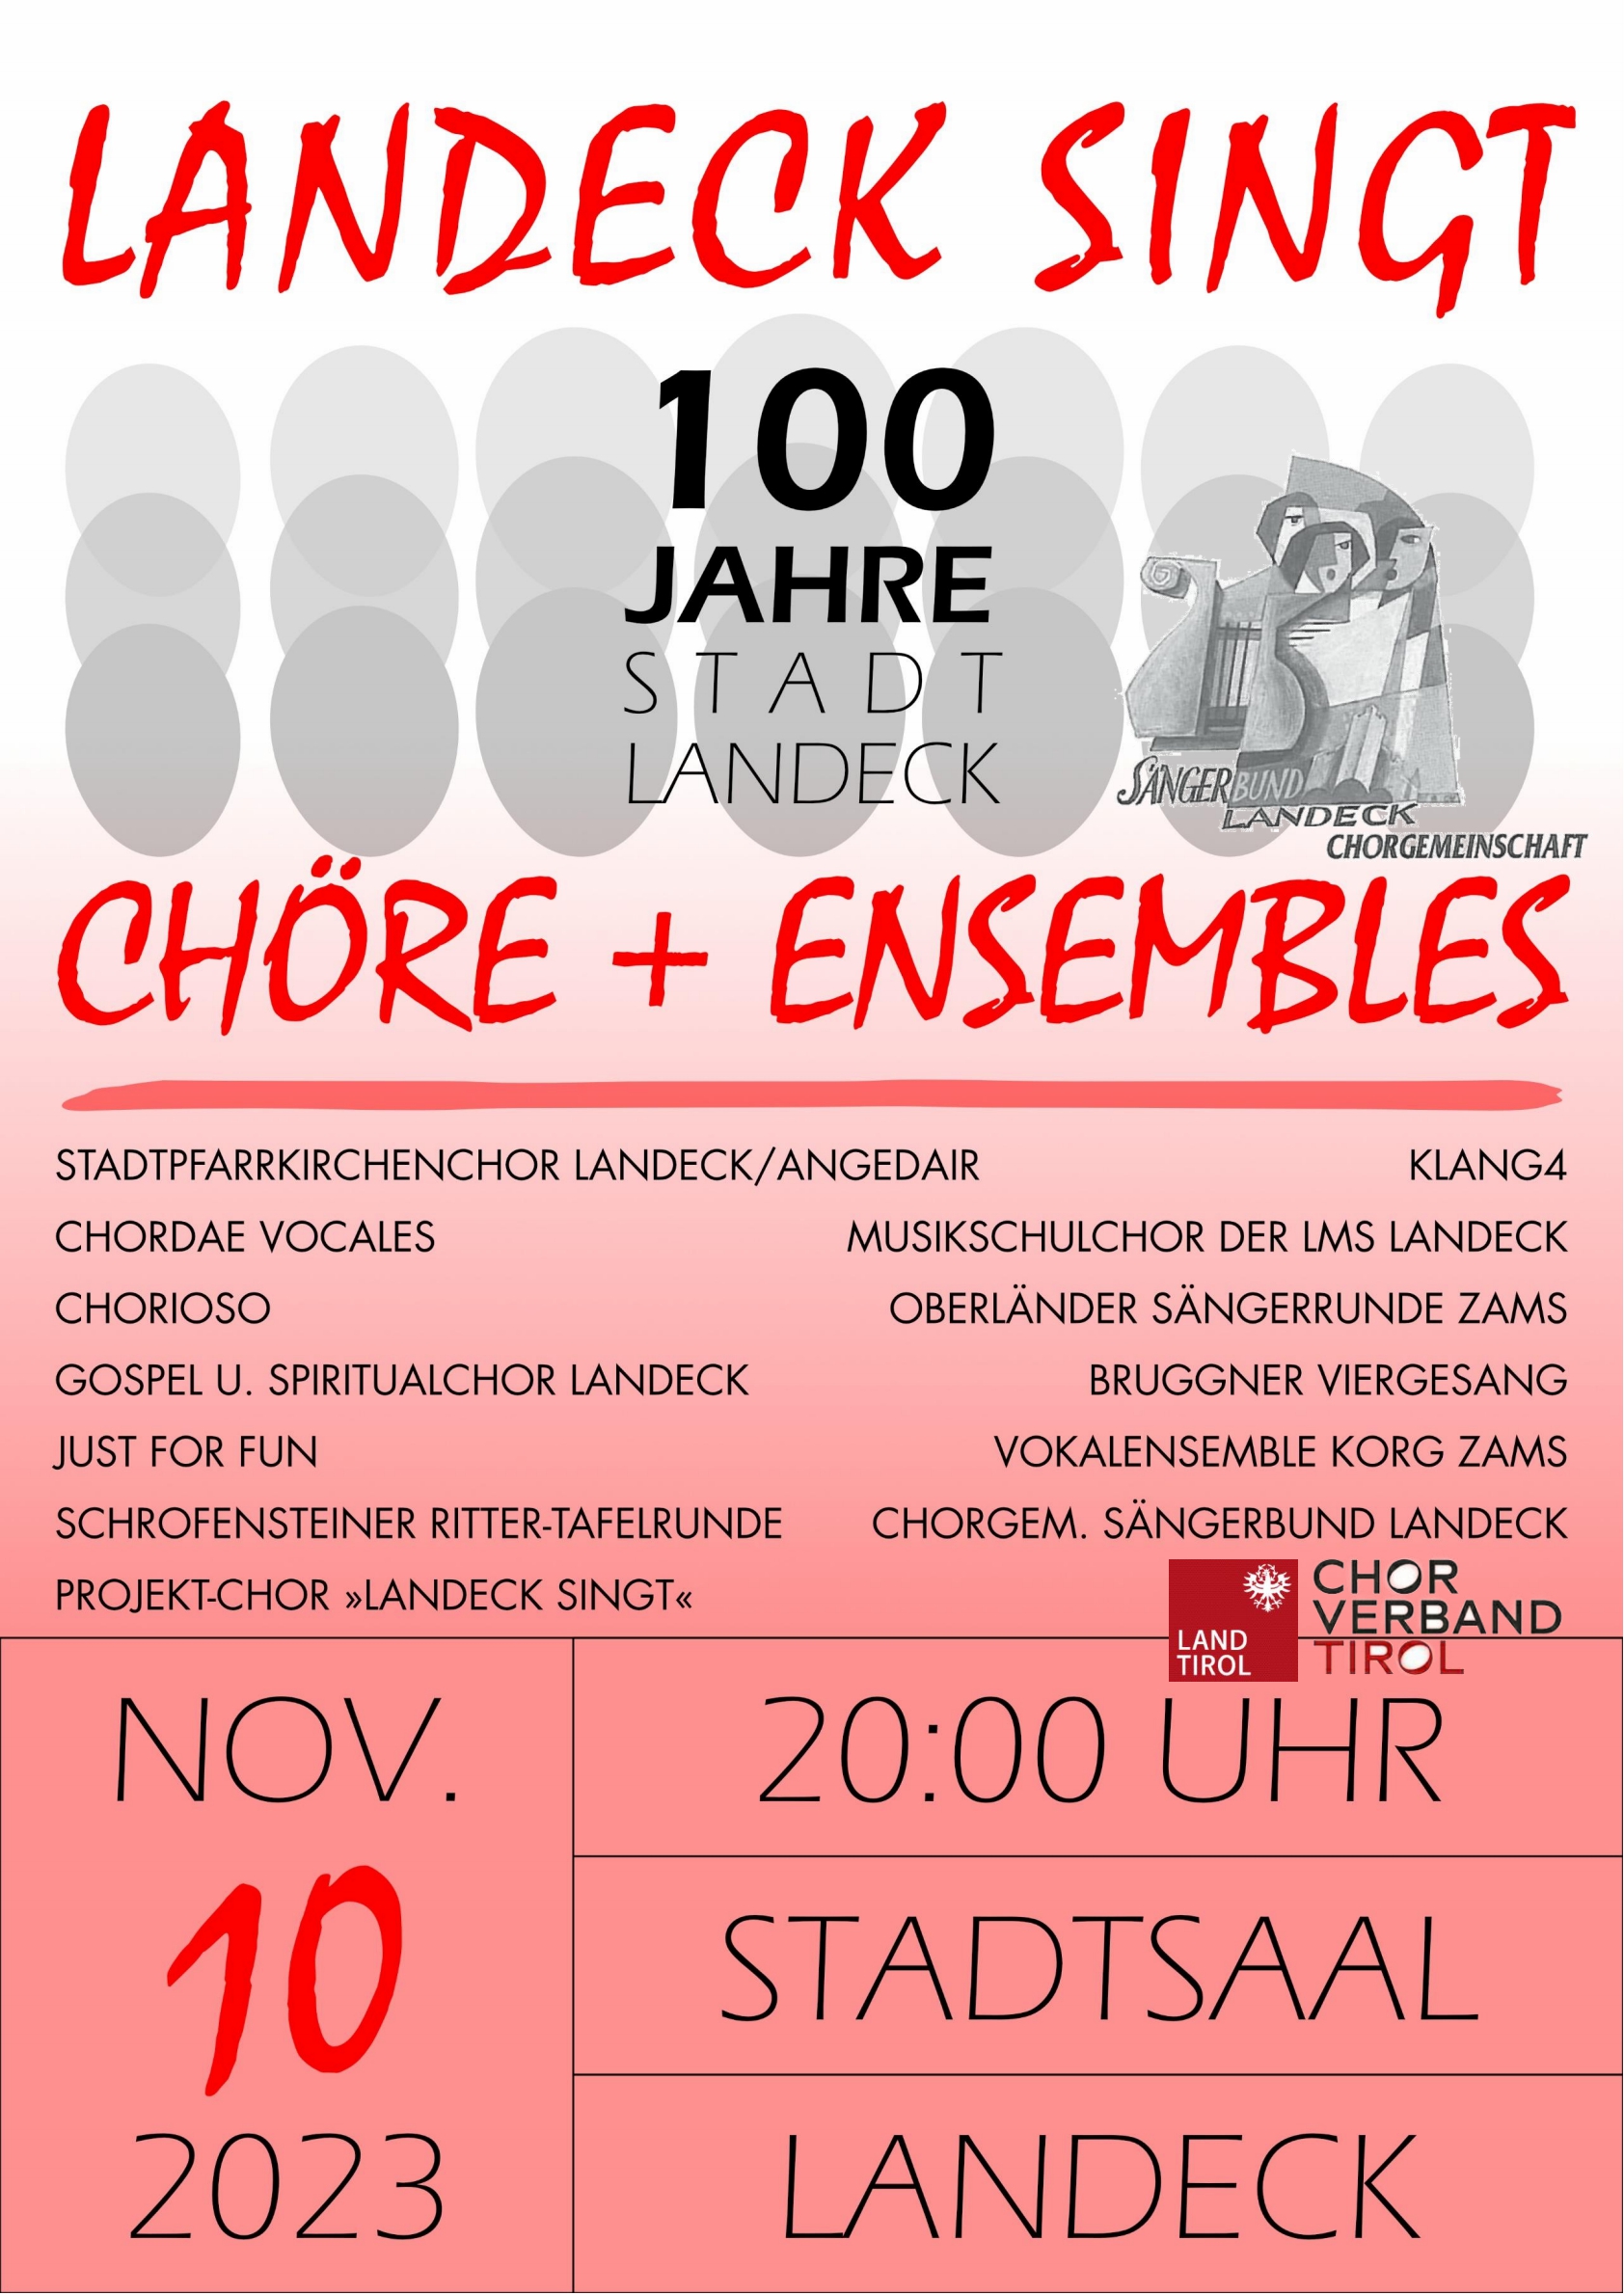 Chorgemeinschaft Sängerbund Landeck